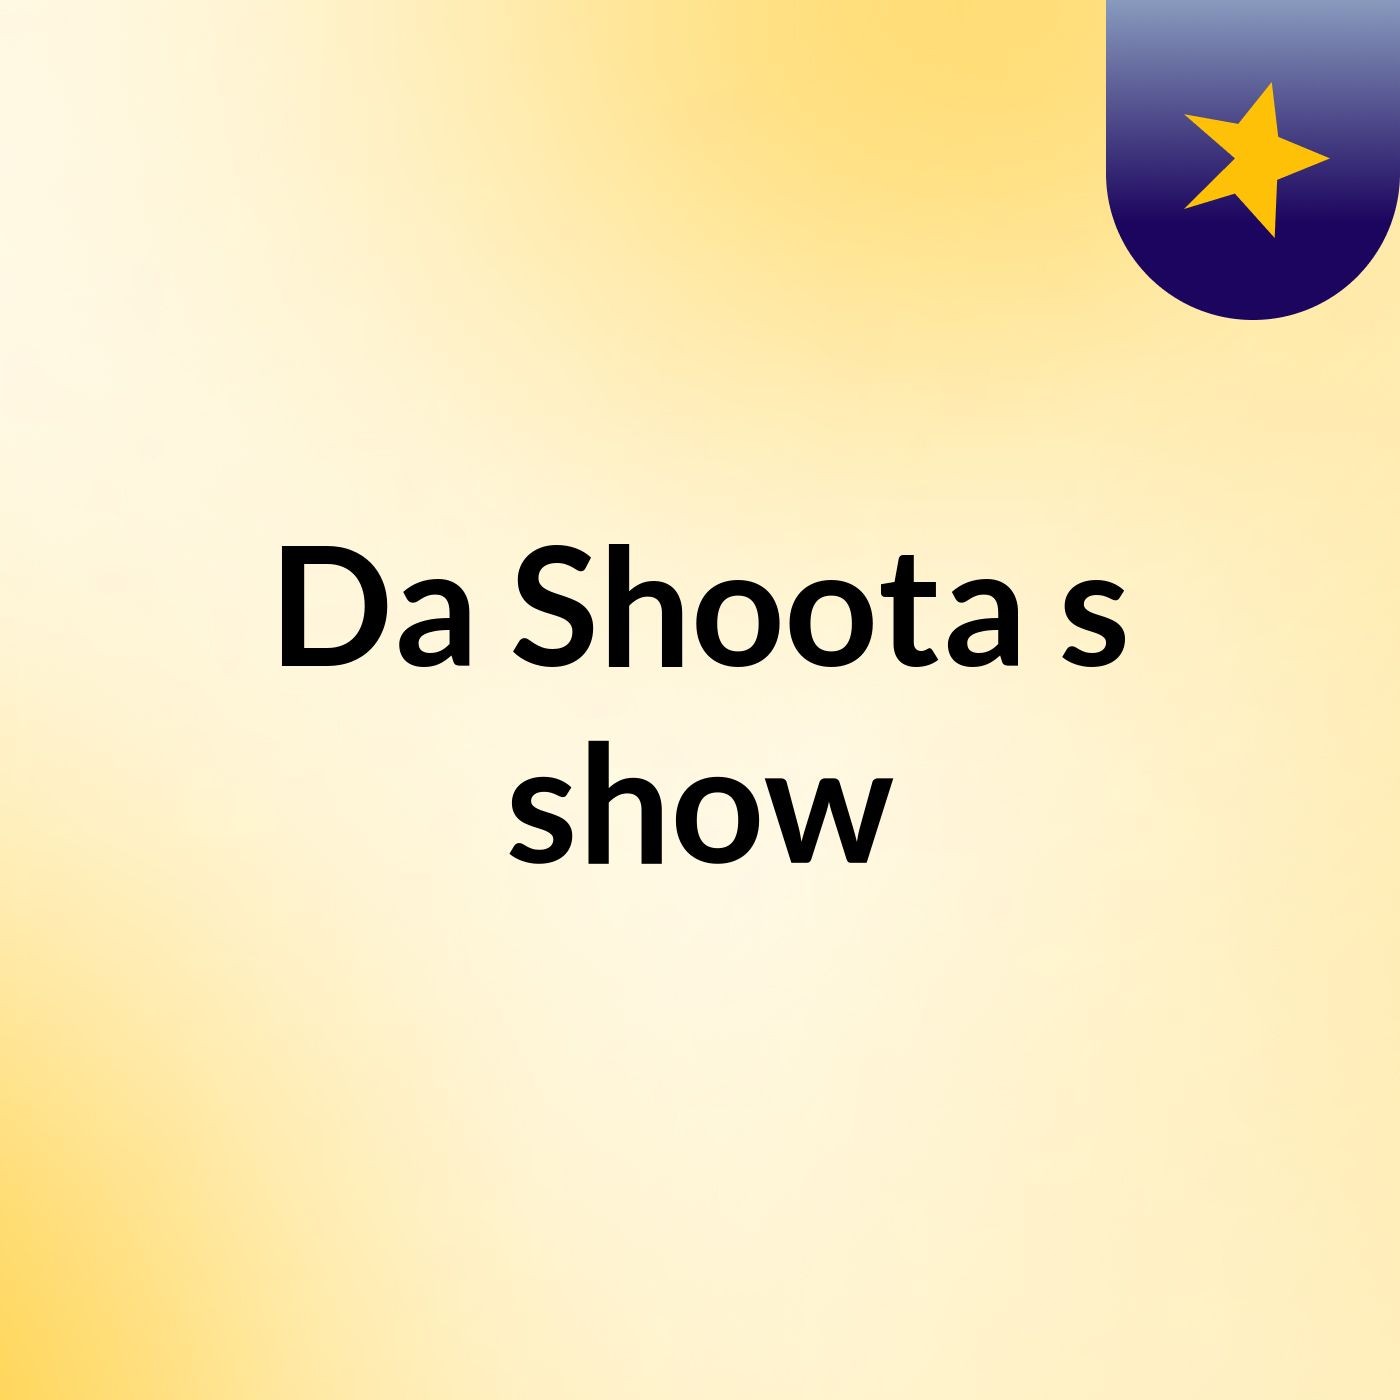 Da Shoota's show